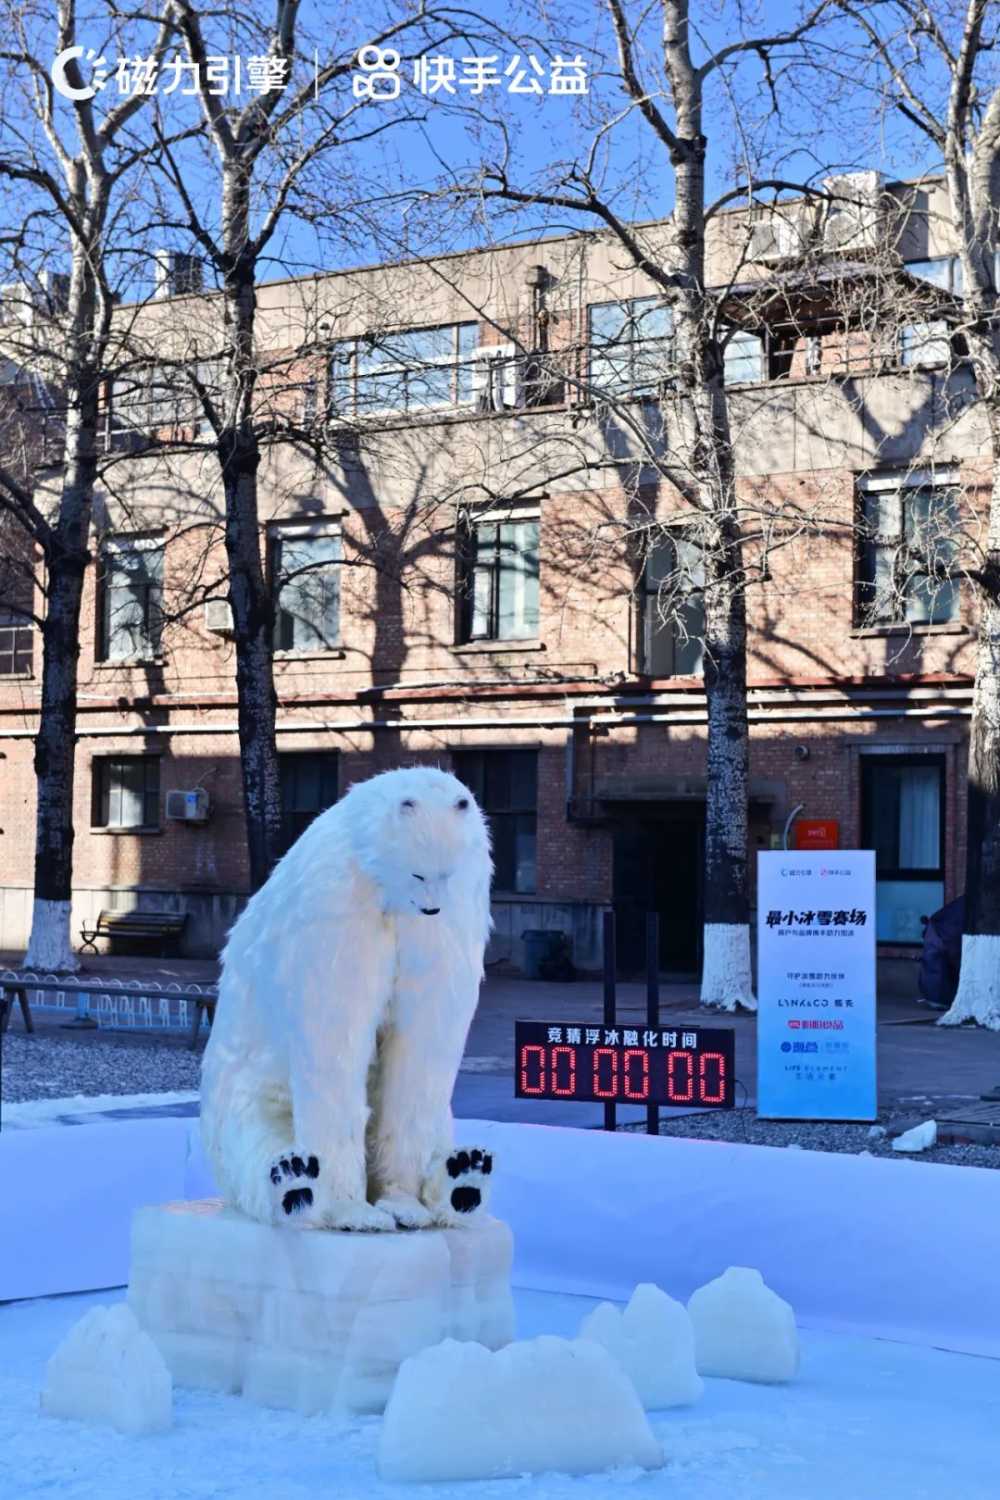 昨天，13894488位老铁在快手围观一头北极熊-第4张图片-周小辉博客